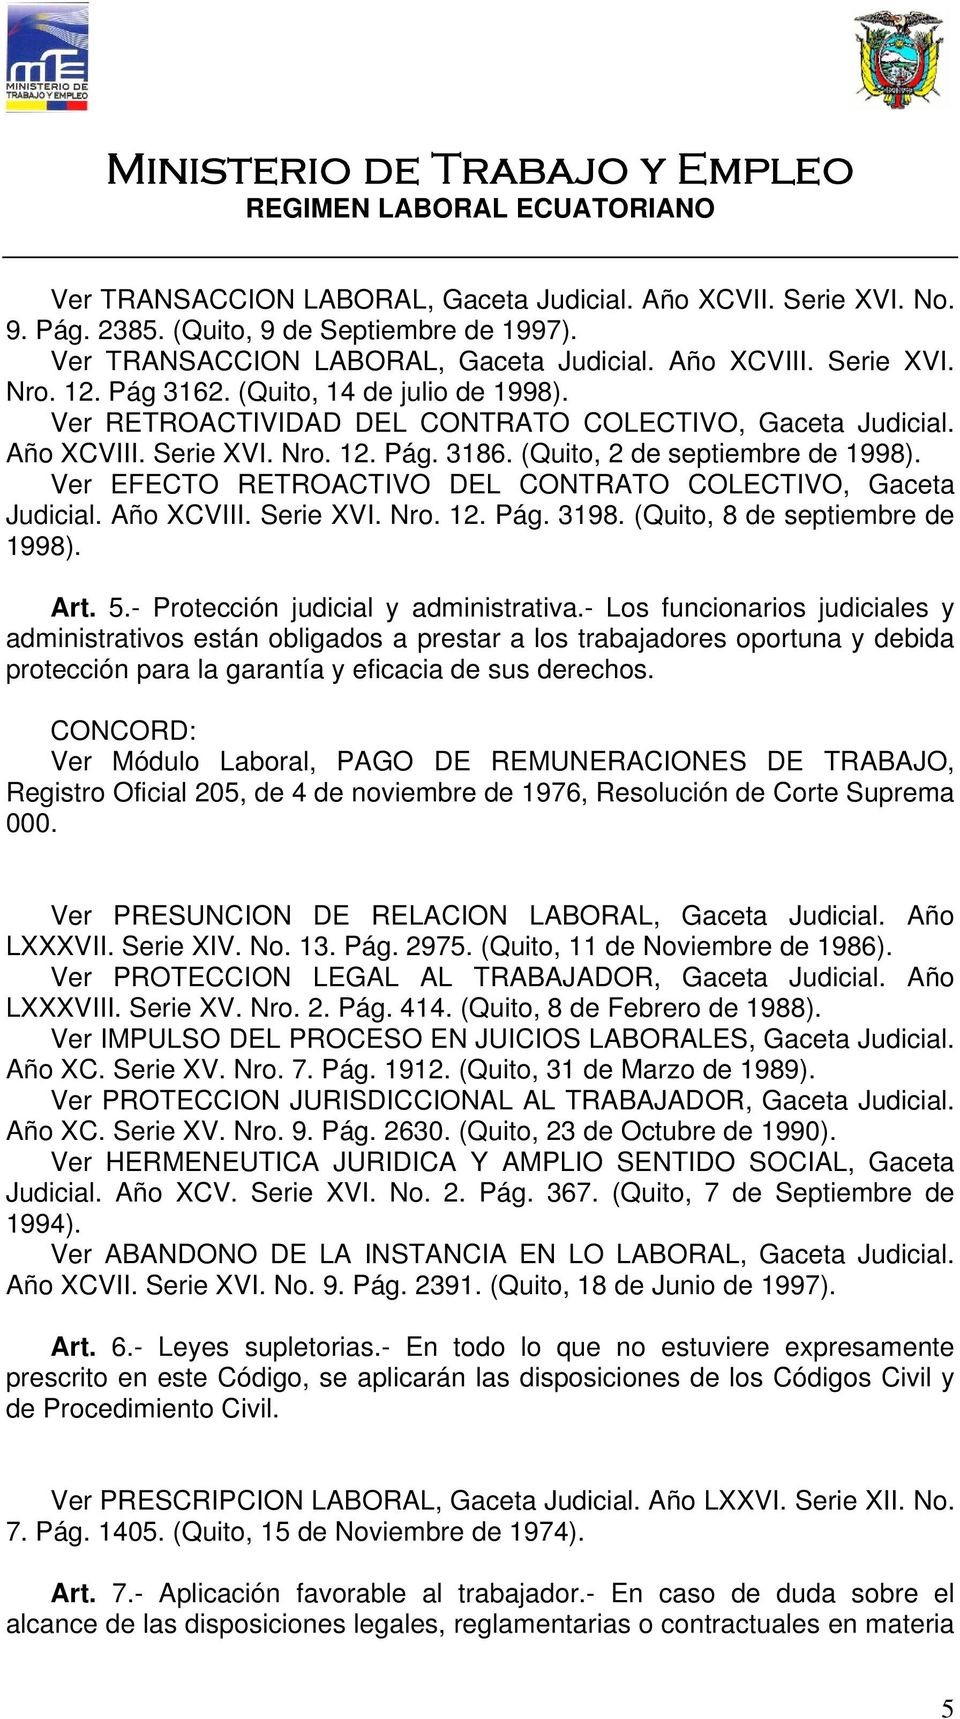 Ver EFECTO RETROACTIVO DEL CONTRATO COLECTIVO, Gaceta Judicial. Año XCVIII. Serie XVI. Nro. 12. Pág. 3198. (Quito, 8 de septiembre de 1998). Art. 5.- Protección judicial y administrativa.